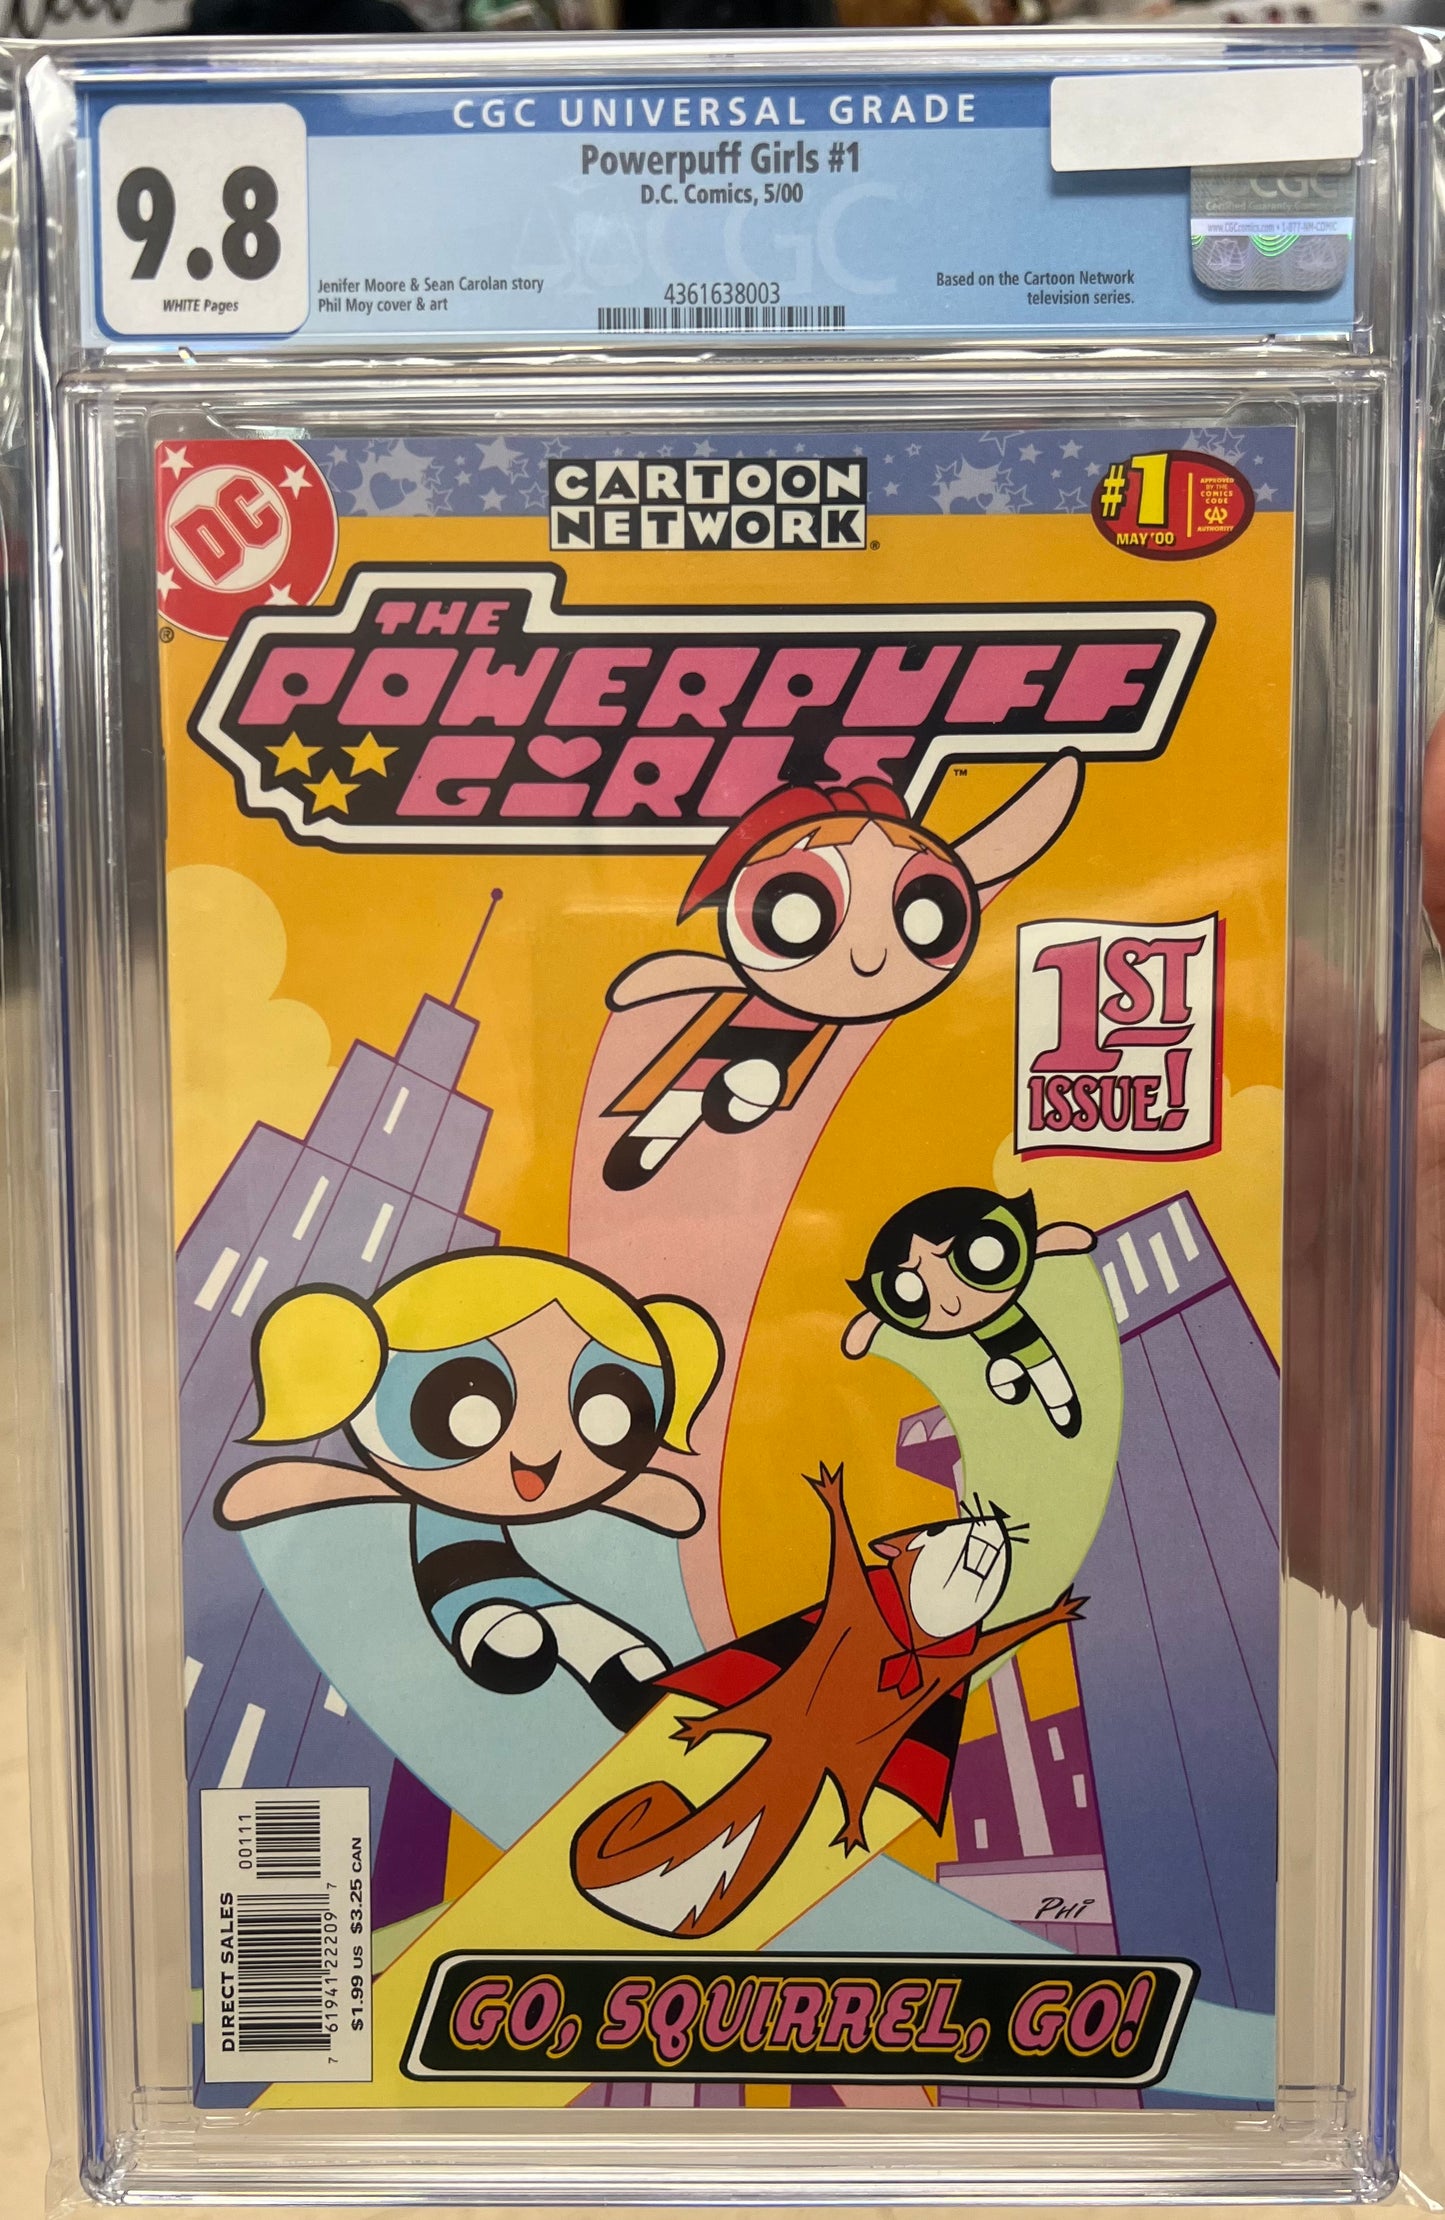 Powerpuff Girls CGC 9.8 (DC, 2000)